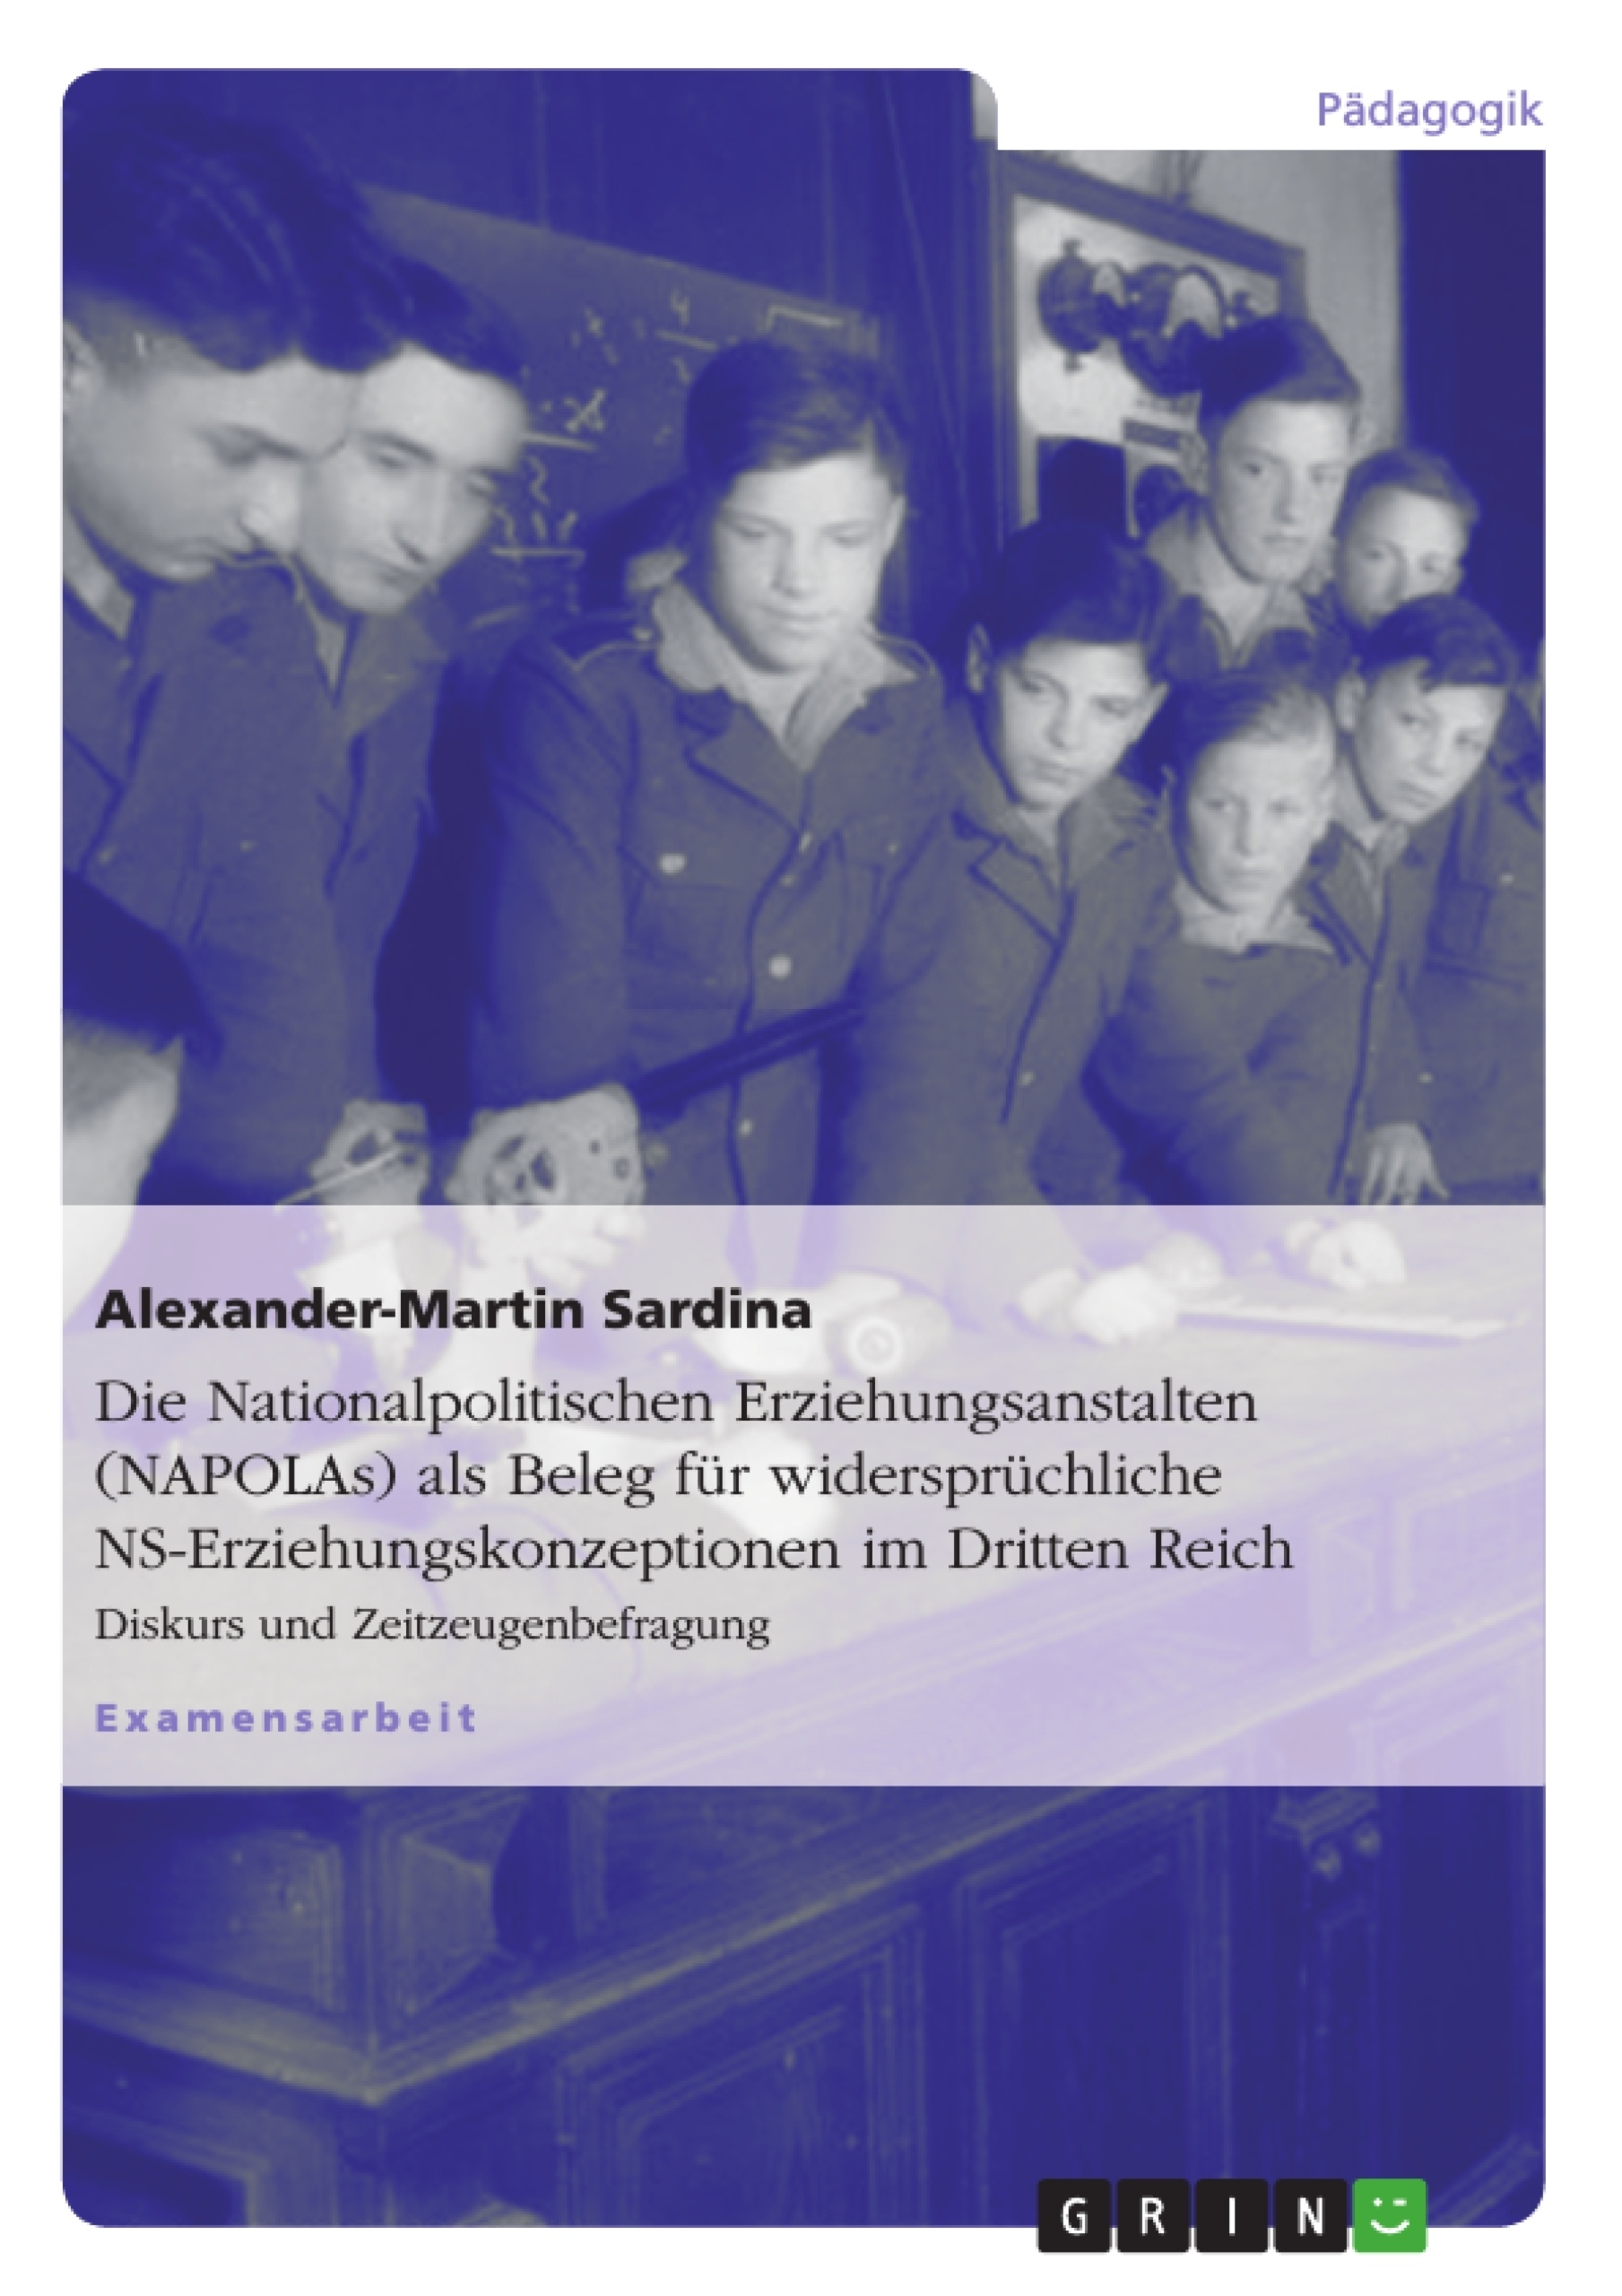 Título: Die Nationalpolitischen Erziehungsanstalten (NAPOLAs) als Beleg für widersprüchliche NS-Erziehungskonzeptionen im Dritten Reich